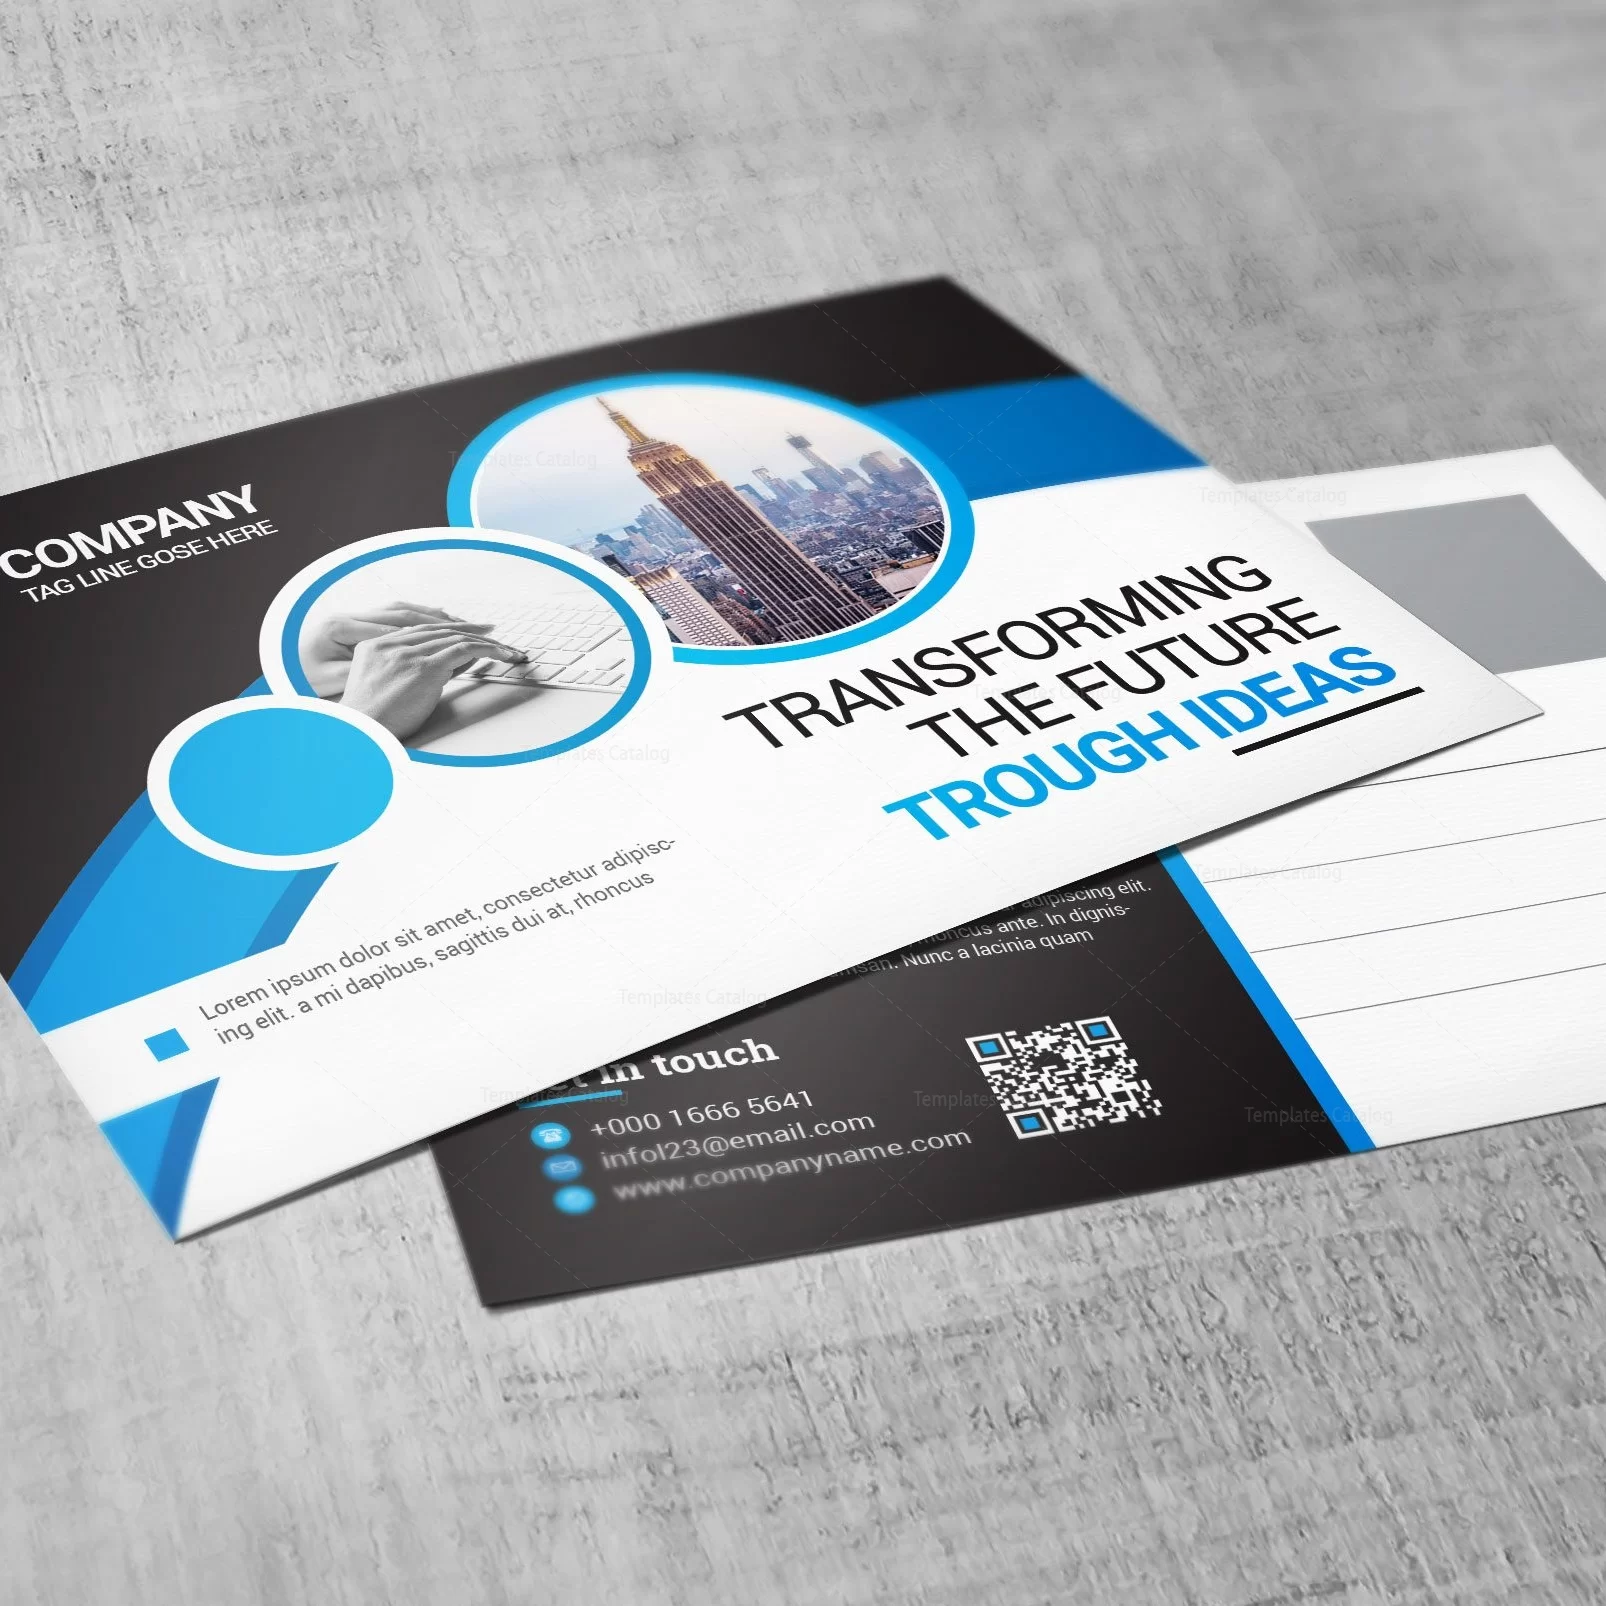 Verslo vizitinė kortelė su moderniu dizainu, įskaitant mėlynus ir baltus elementus, reklaminį šūkį, QR kodą bei kontaktinę informaciją.